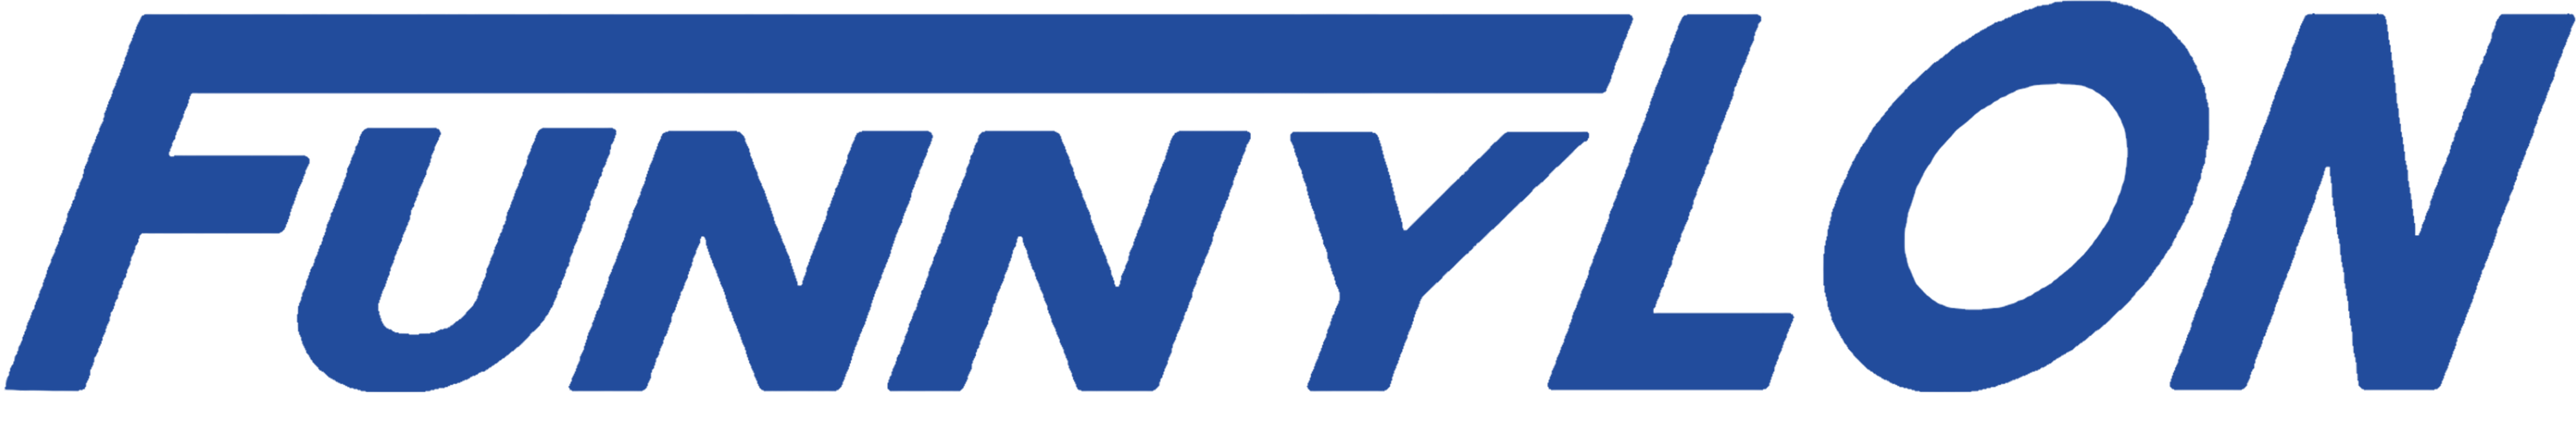 Funnylon logo